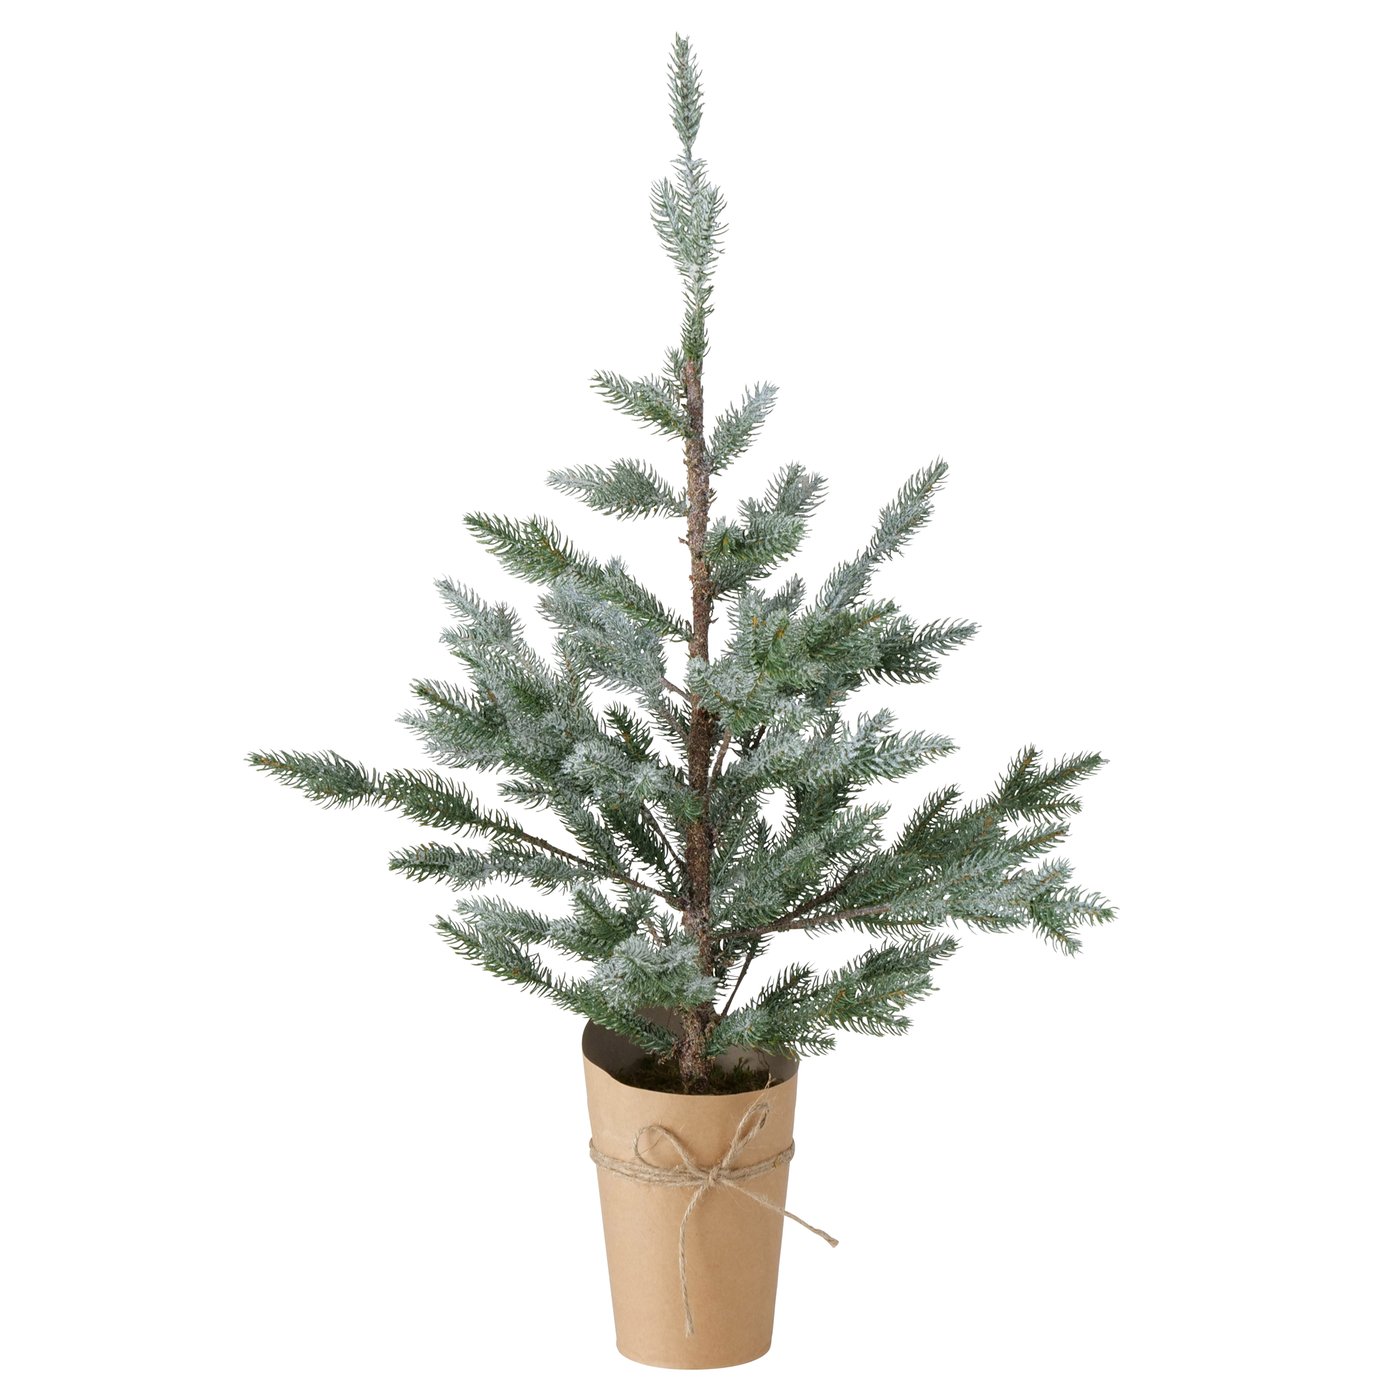 Künstlicher Weihnachtsbaum im Topf grün beschneit Höhe 80cm, 2006373, 4020607810761